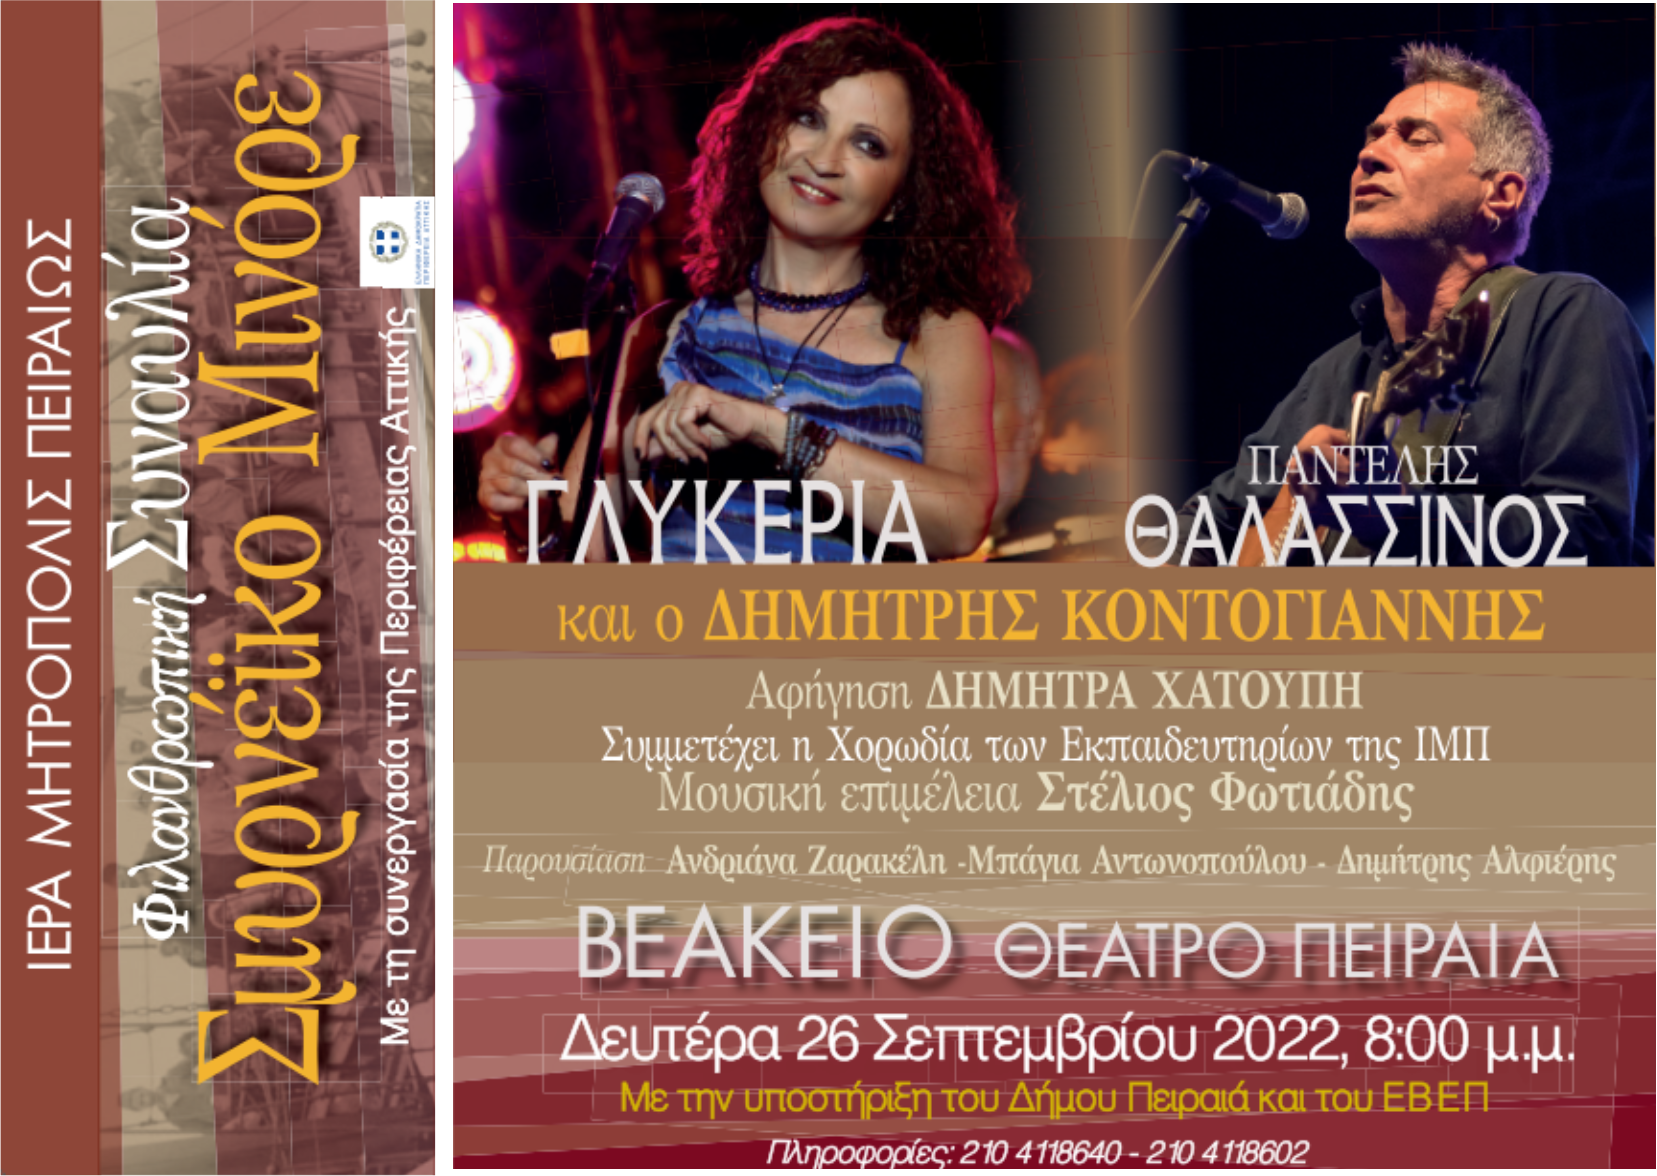 Αφιερωματική Συναυλία «Σμυρνέϊκο Μινόρε» με την Γλυκερία και τον Παντελή Θαλασσινό.